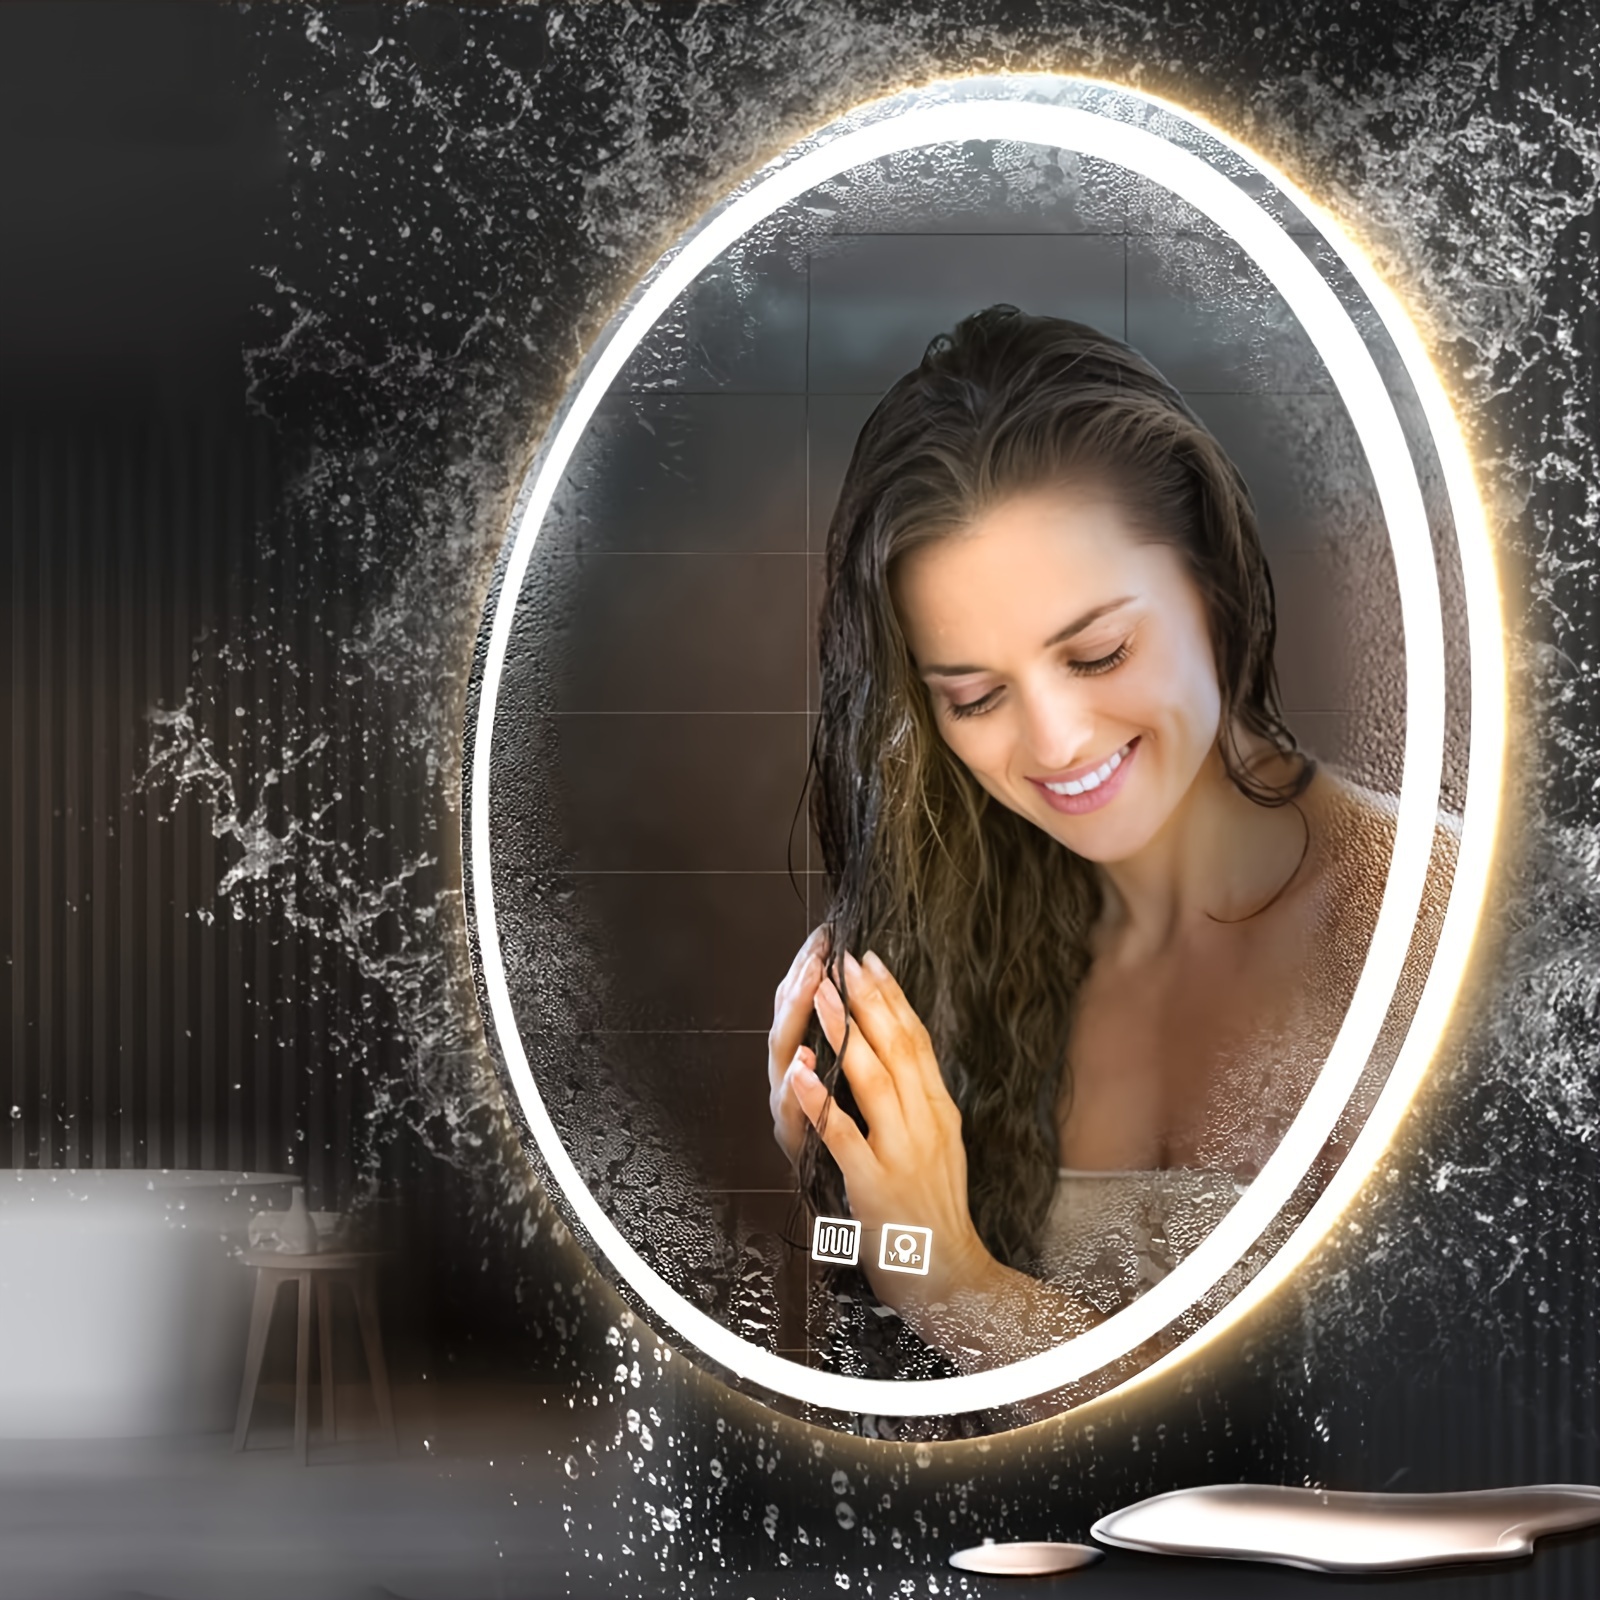  Luxo Espejo de afeitado, espejo de ducha con un soporte para  afeitar con potente ventosa, espejo antivaho inastillable para ducha  (transparente) : Hogar y Cocina